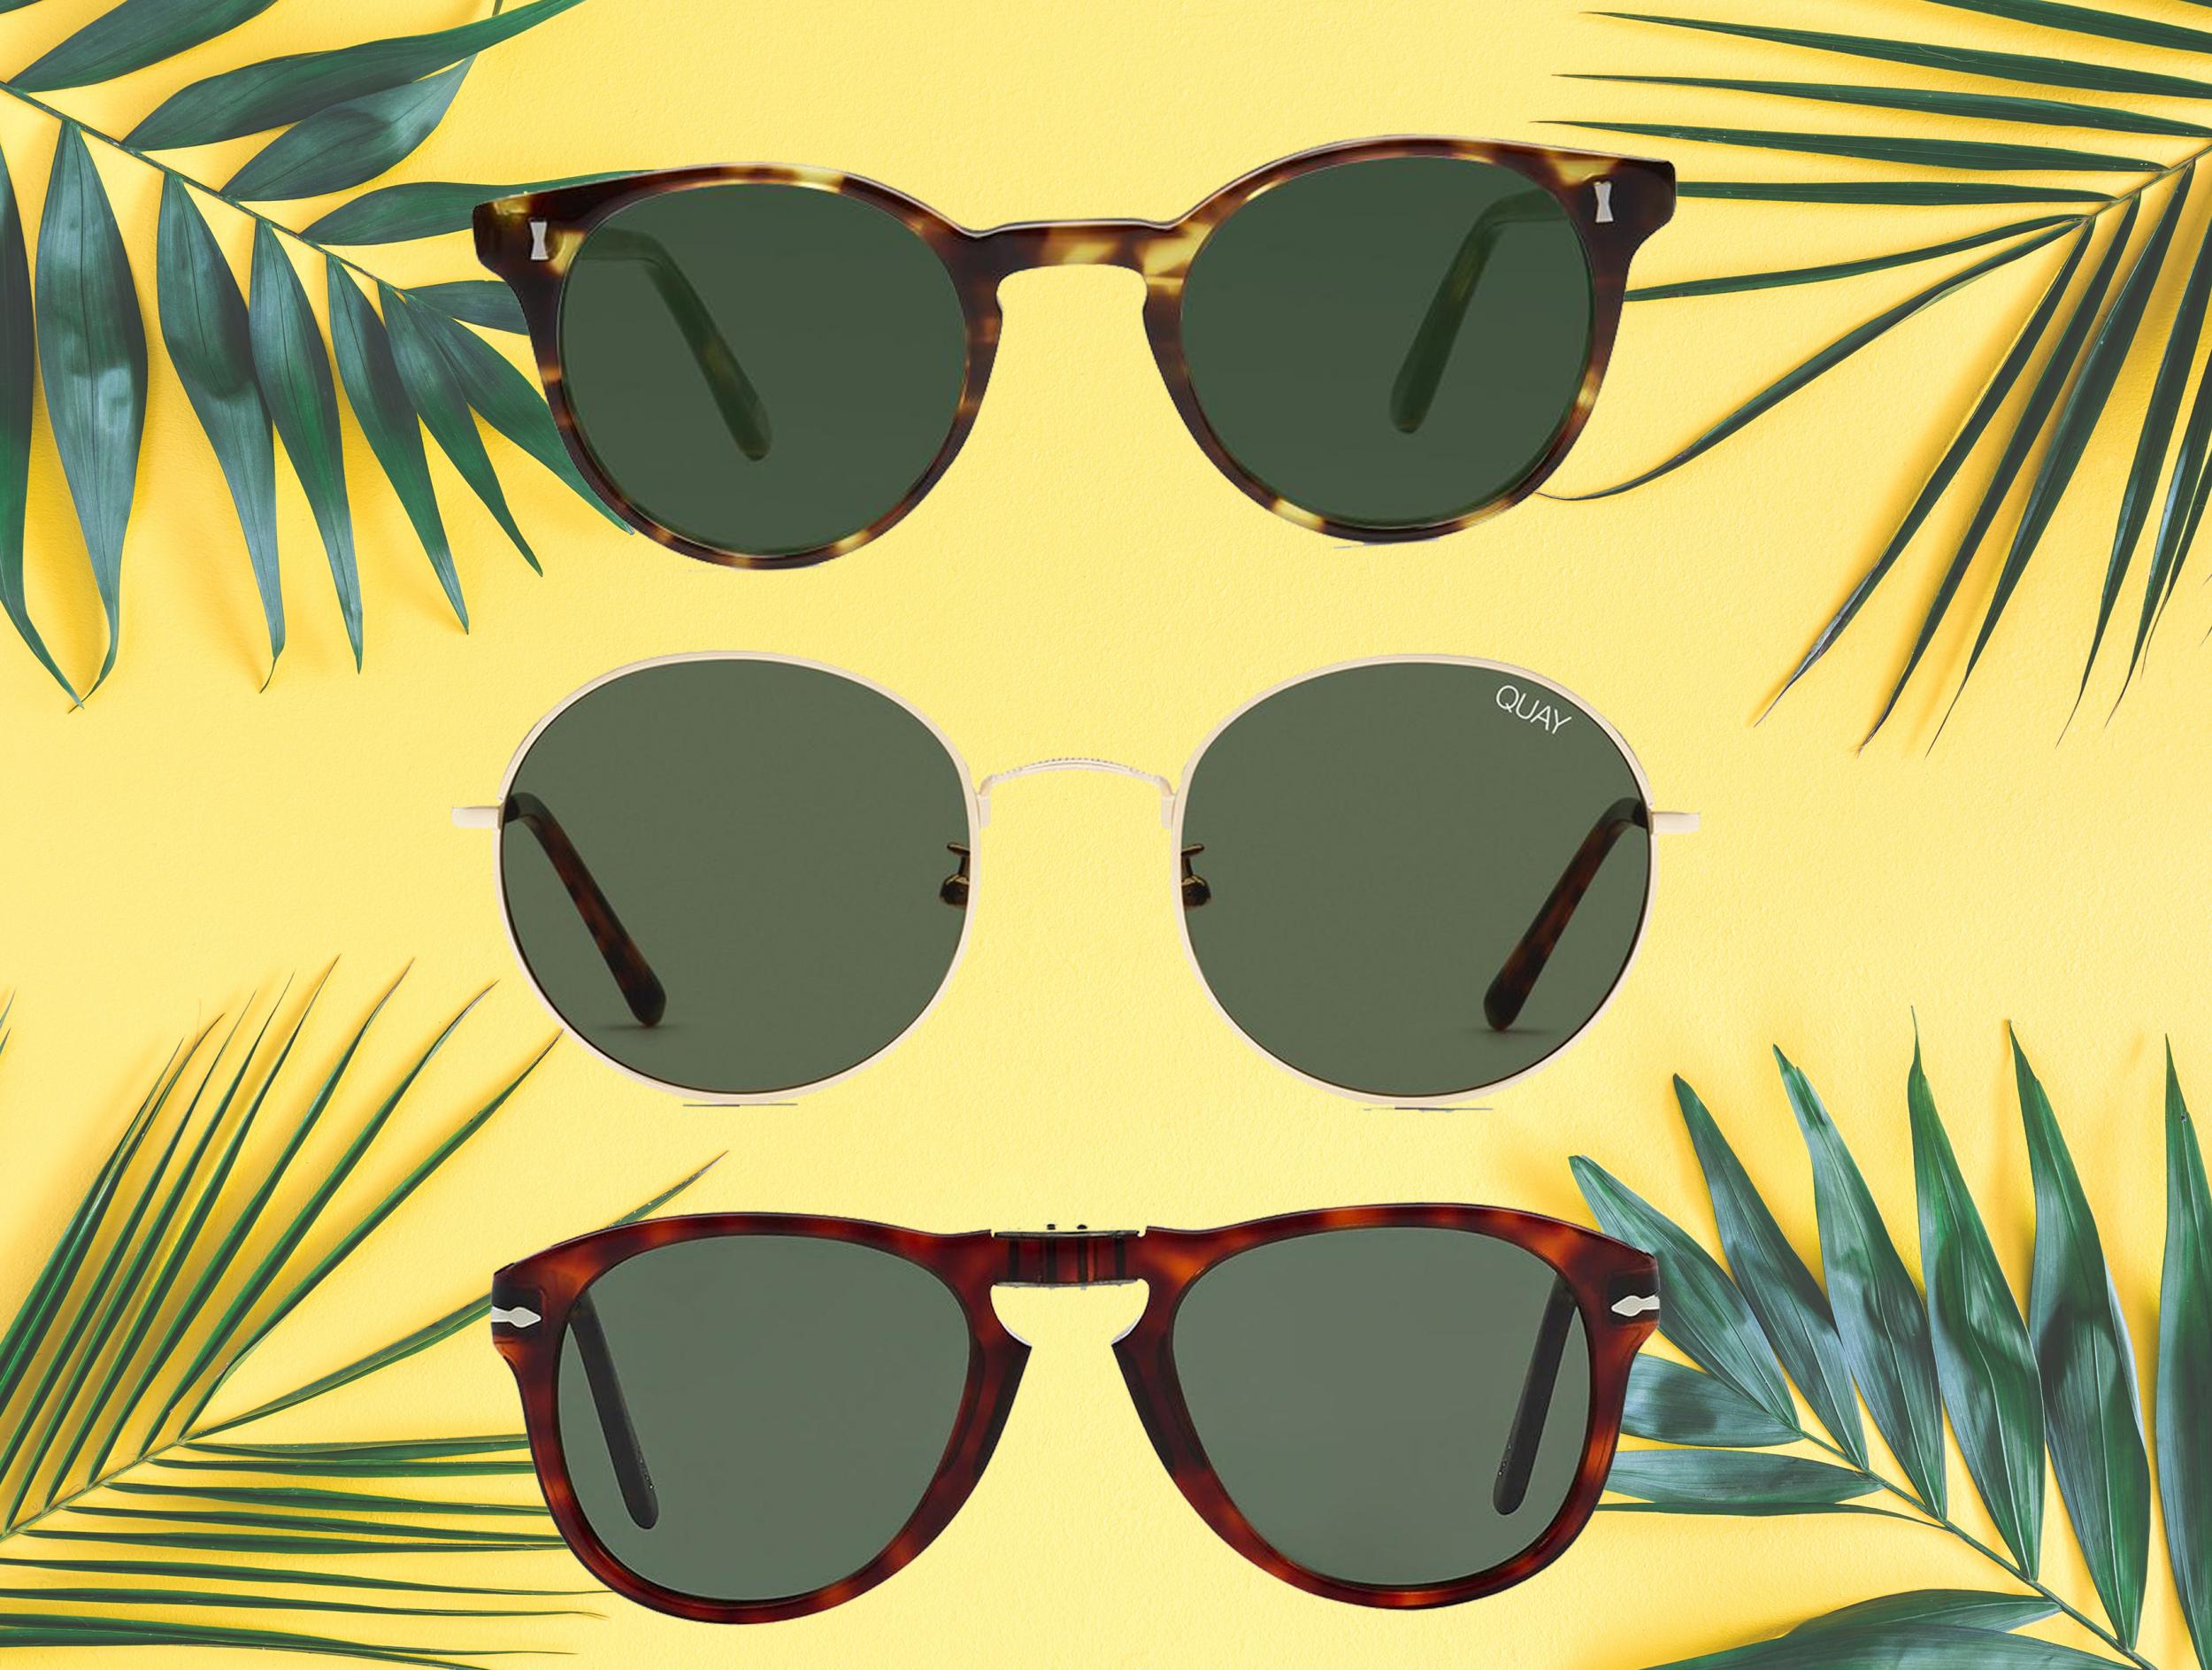 wayfarer style sunglasses uk